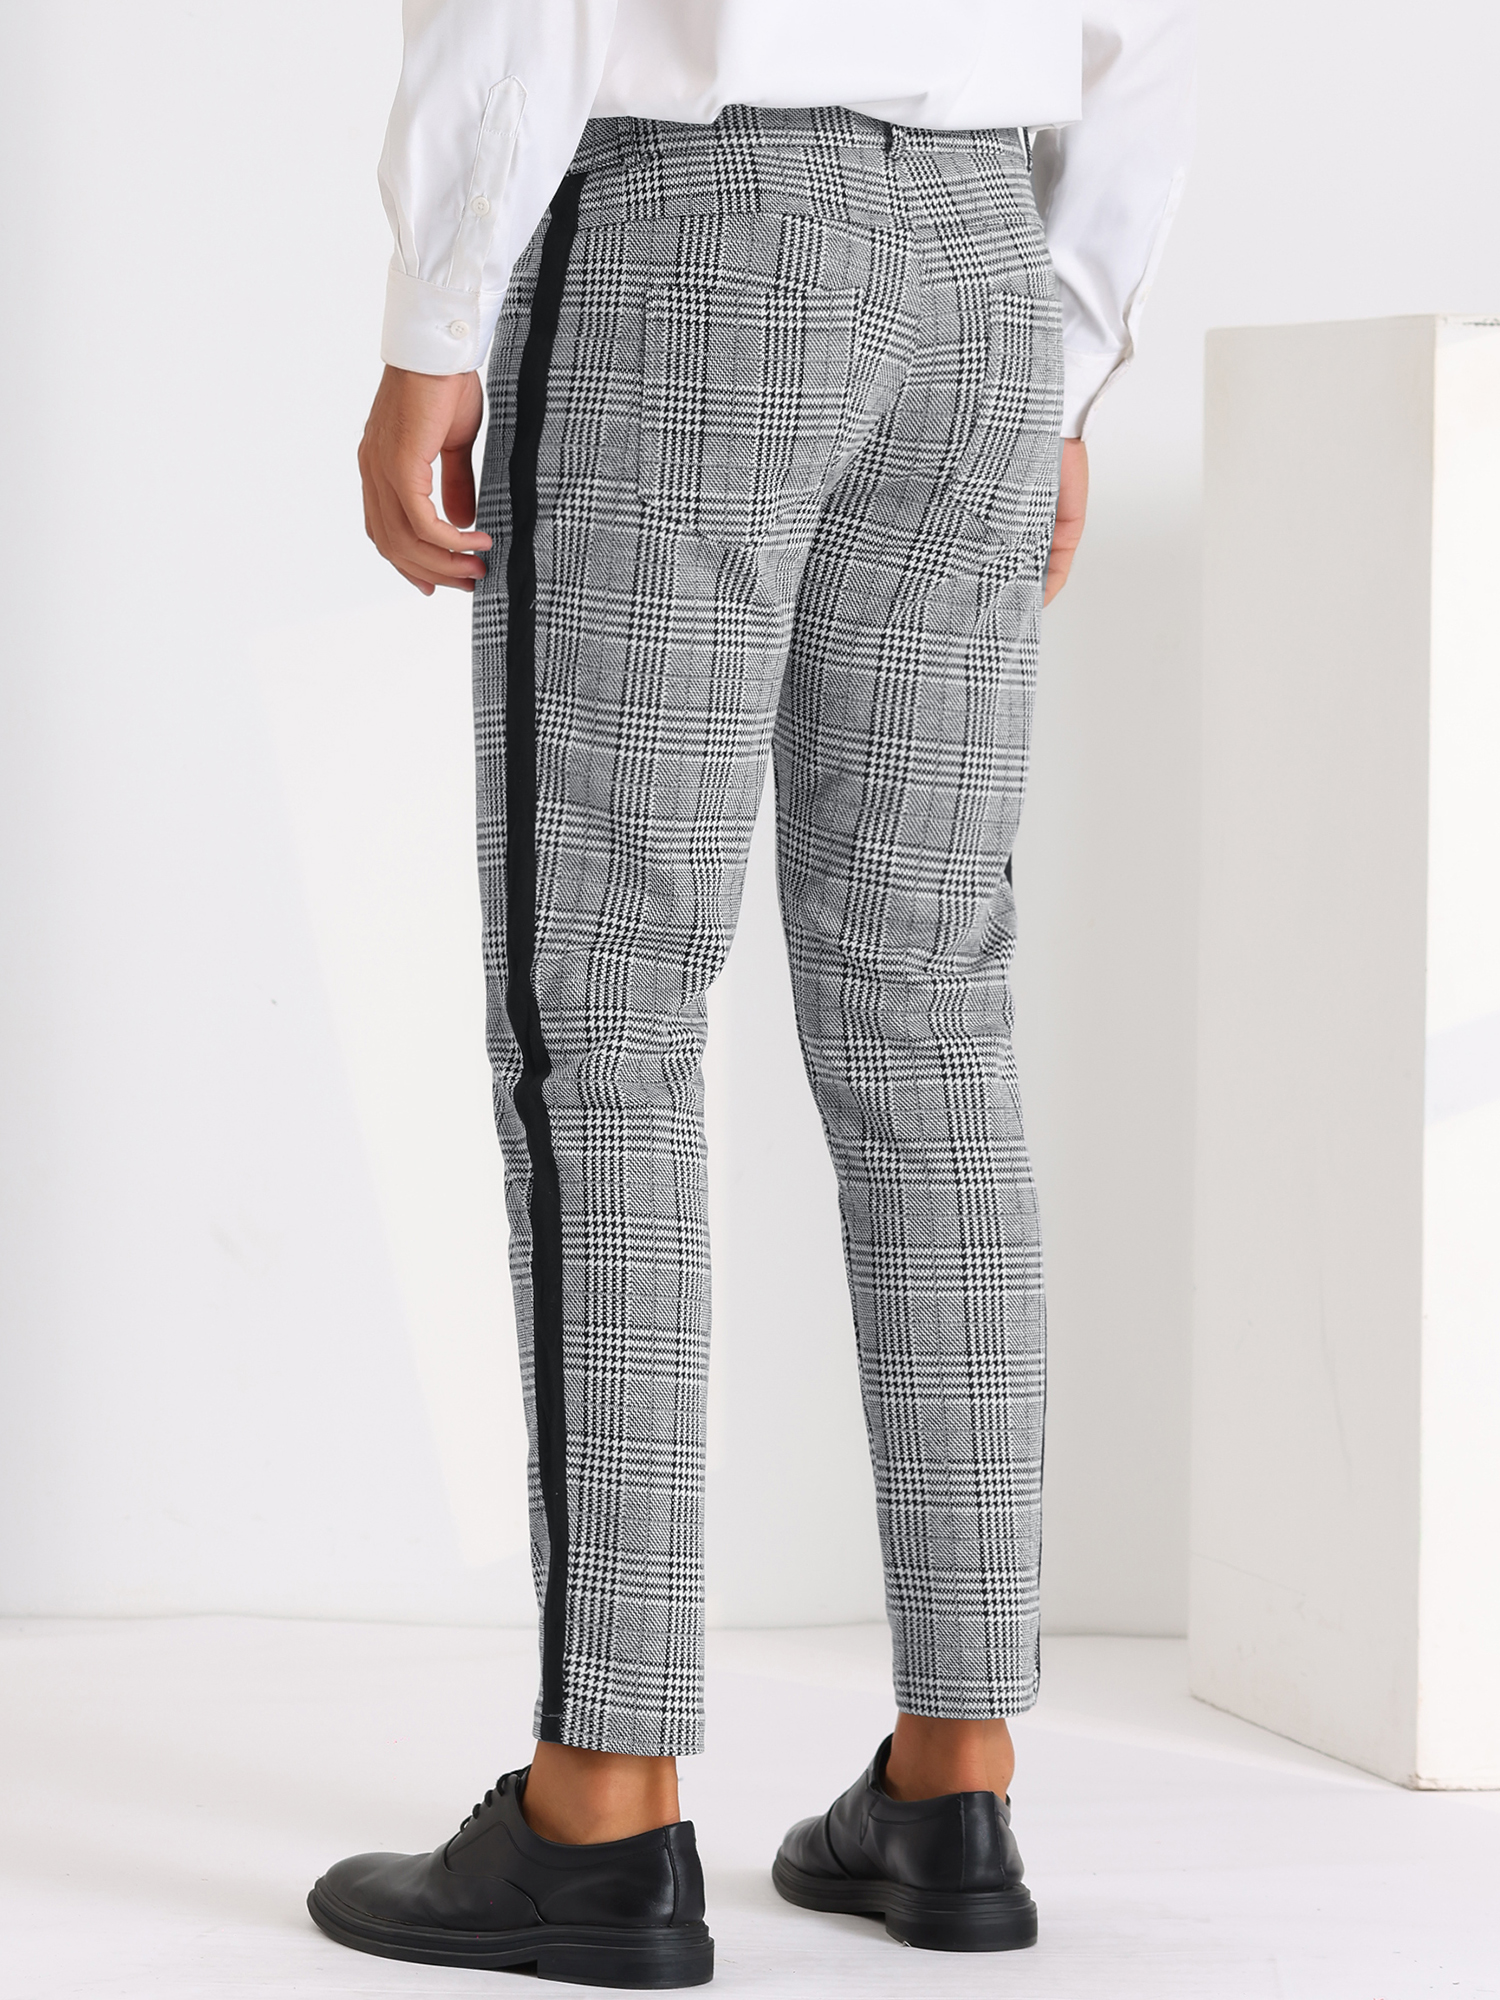 Unique Bargains Plaid Dress Pants for Men's Contrast Color Checked Flat Front Formal Pants